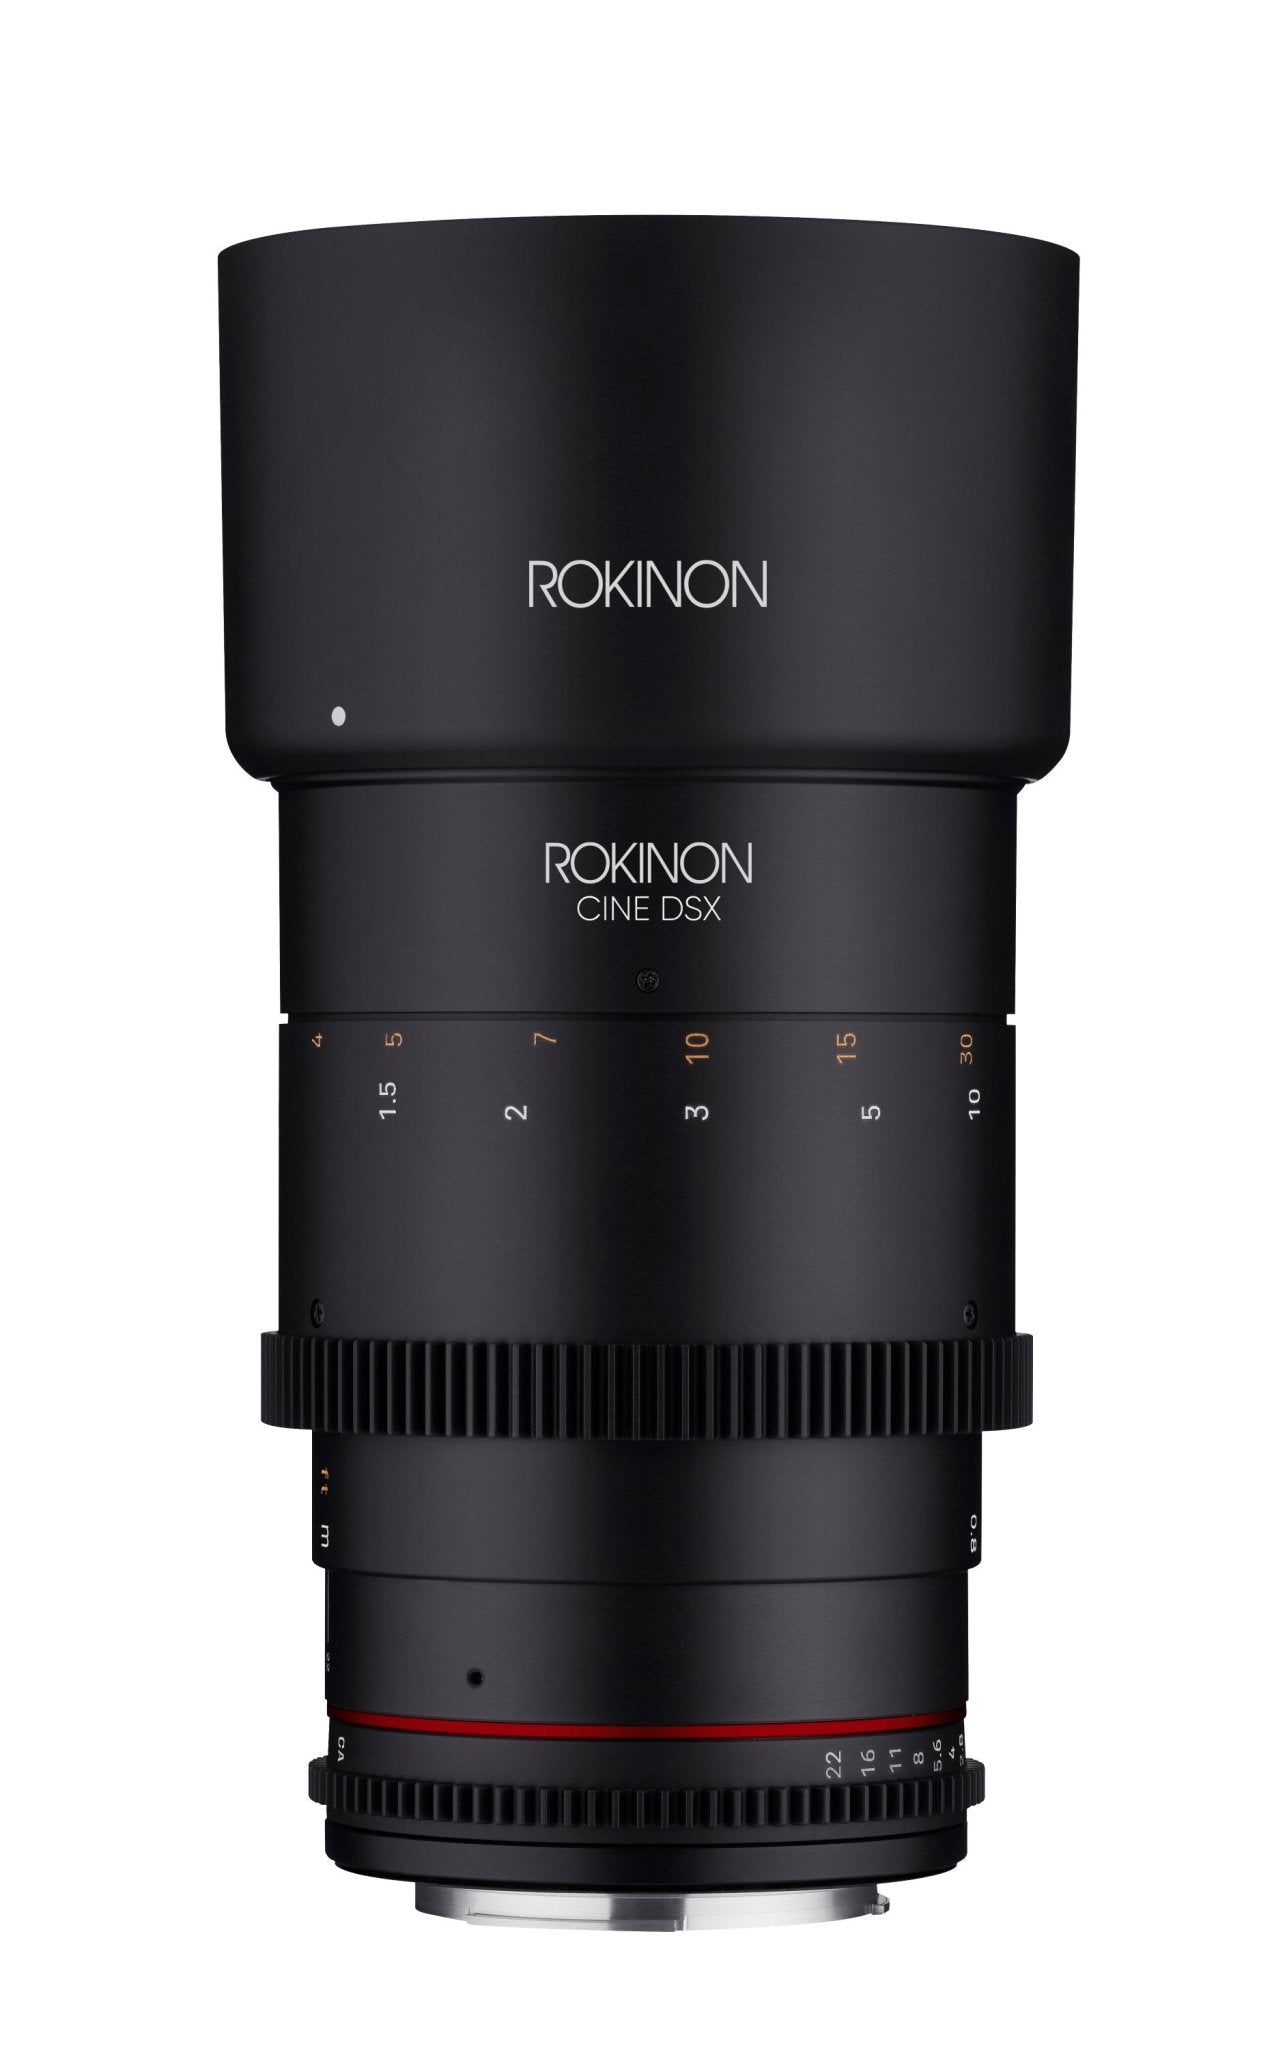 135mm T2.2 Full Frame Telephoto Cine DSX - Rokinon Lenses - DSX135-C